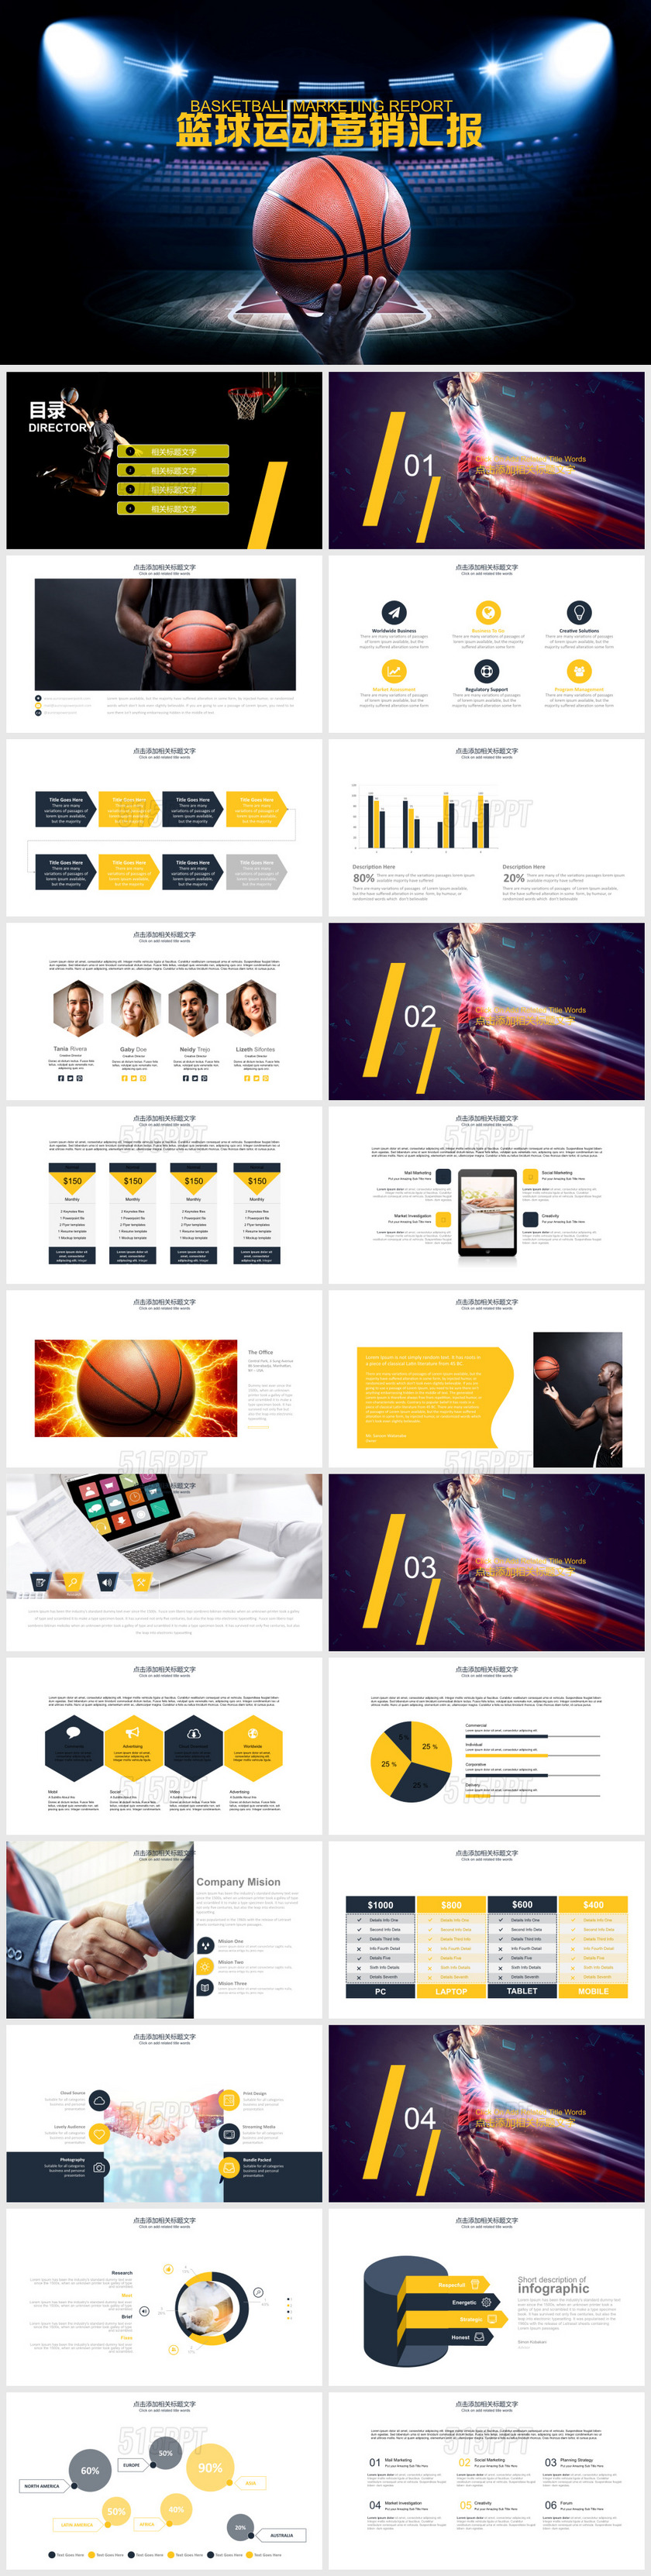 篮球比赛体育营销活动策划动画PPT模板幻灯片篮球一